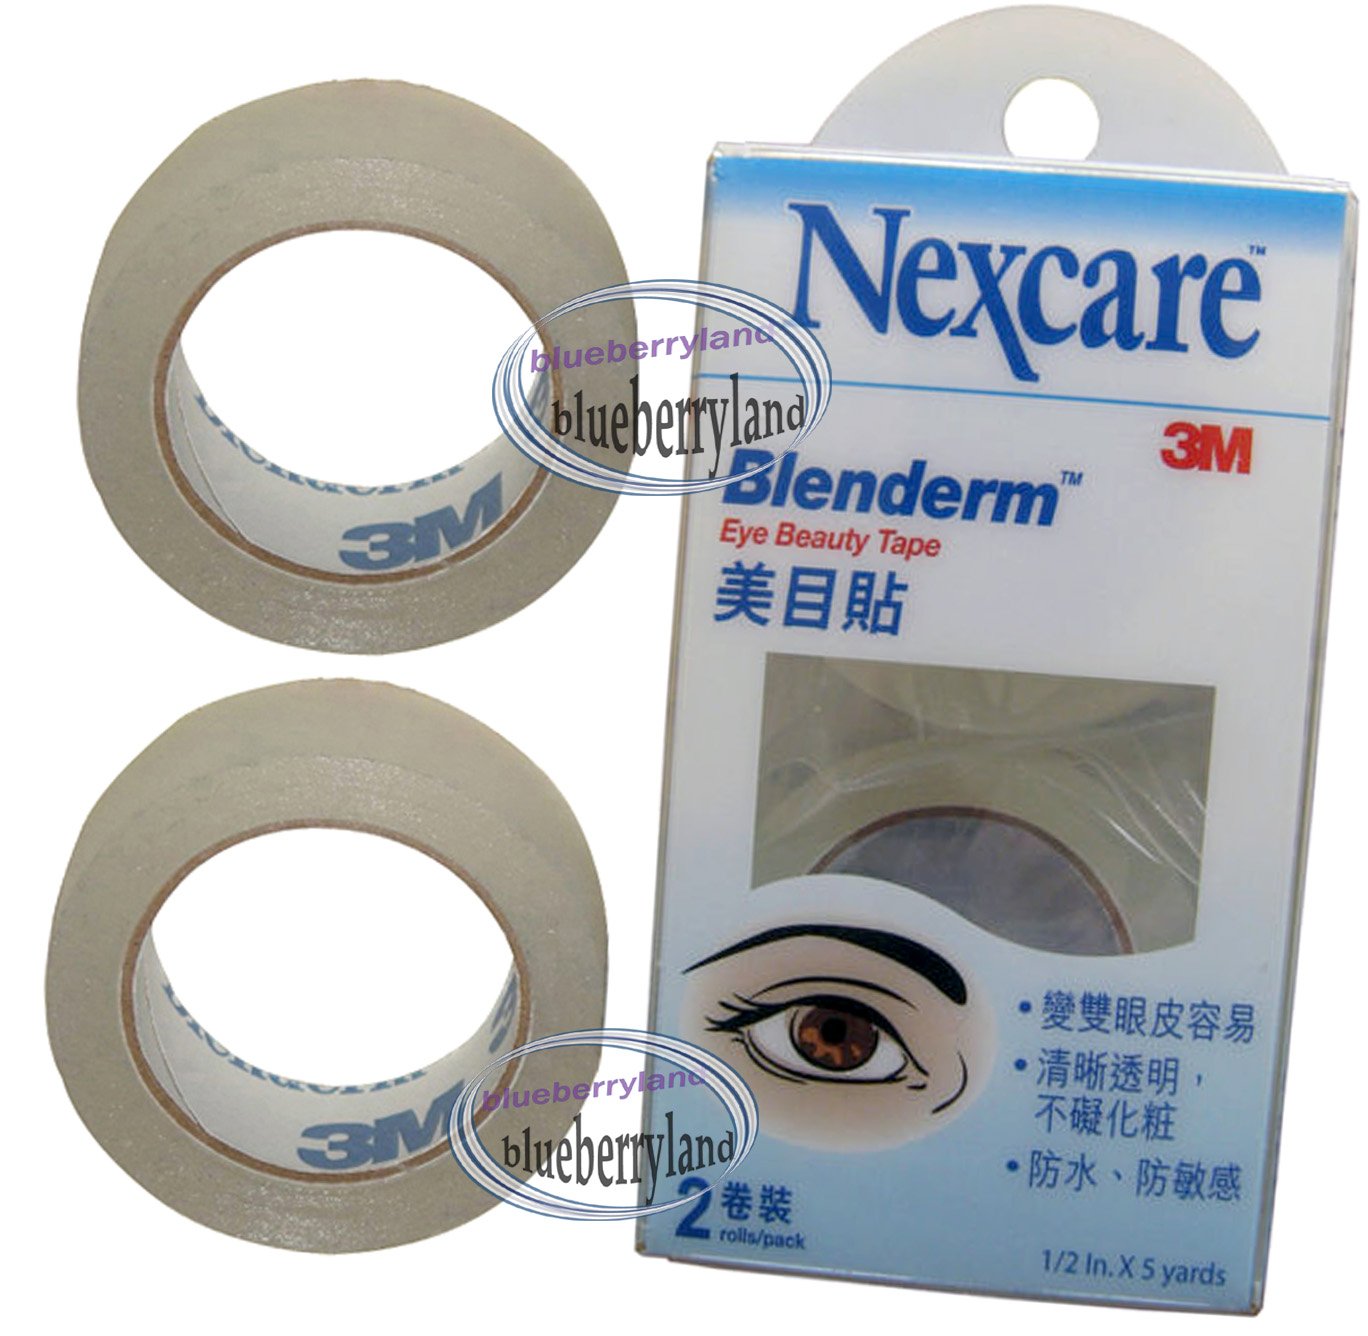 3m Nexcare Blenderm Double Eyelid Eye Beauty Tape 2 Roll